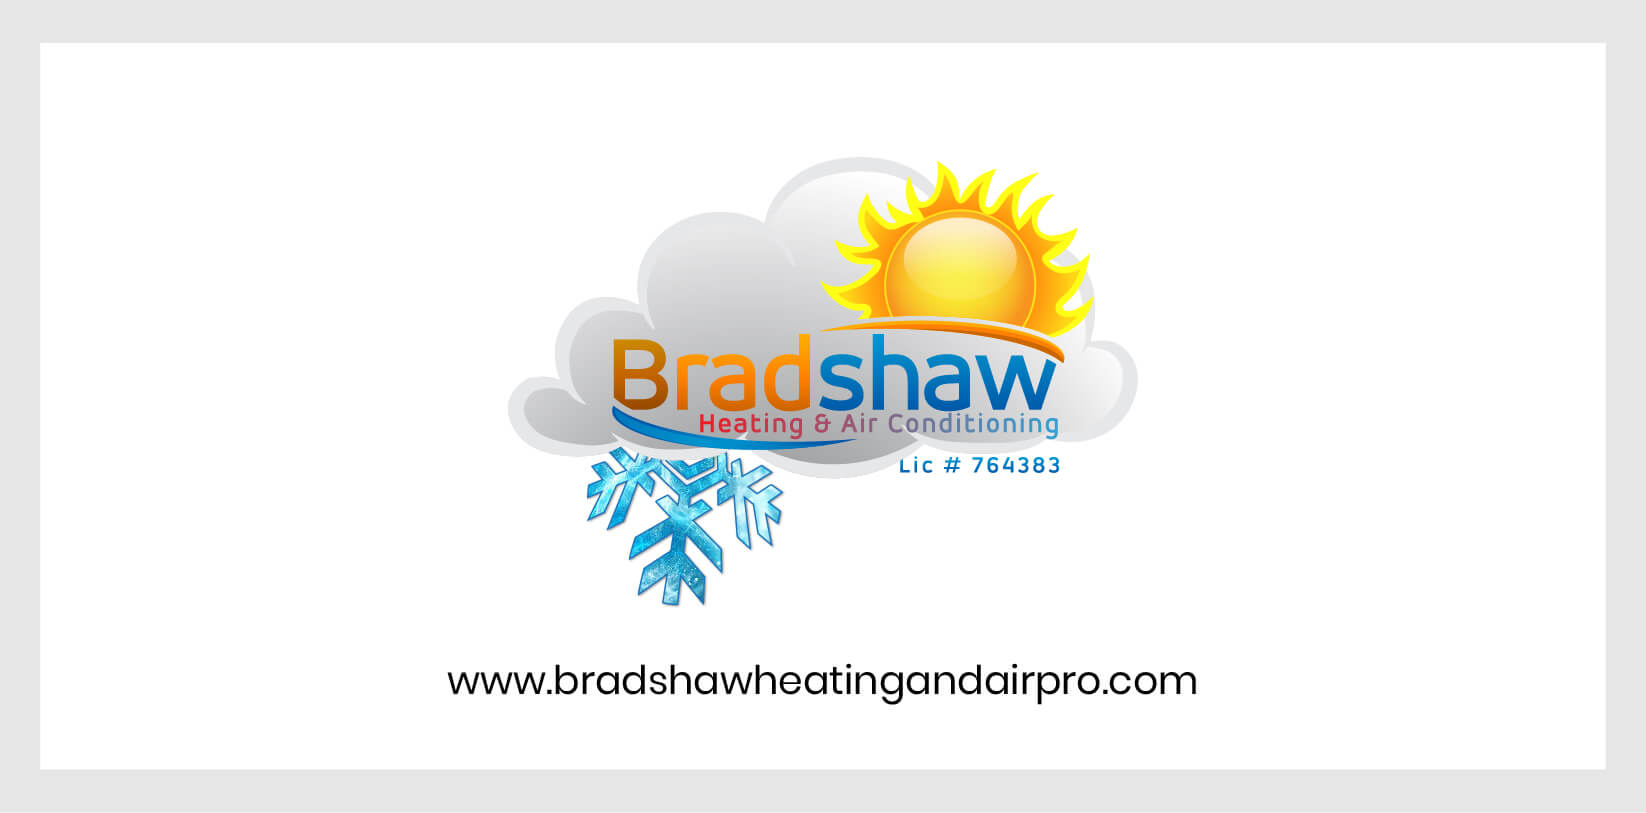 (c) Bradshawheatingandairpro.com